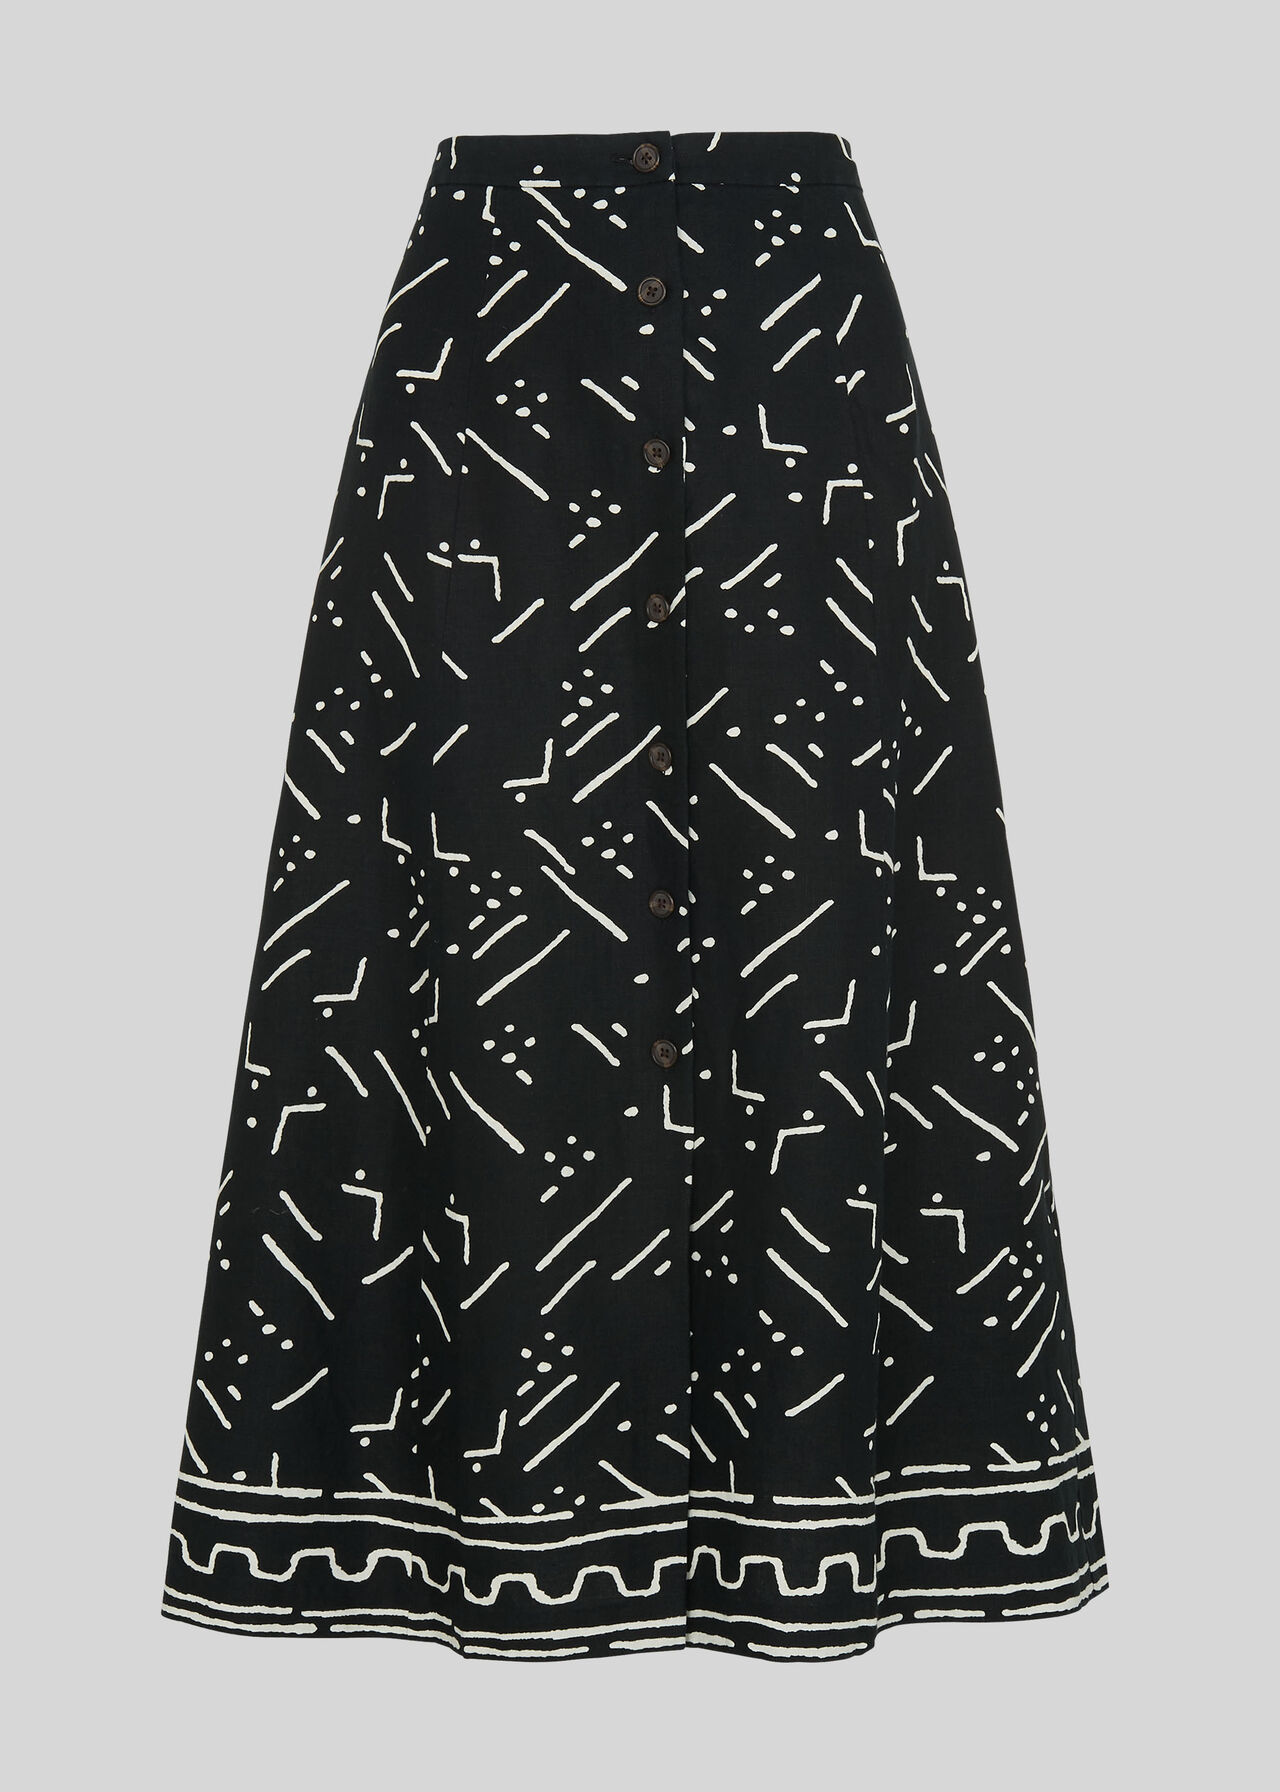 Kuba Print Linen Skirt Black/Multi